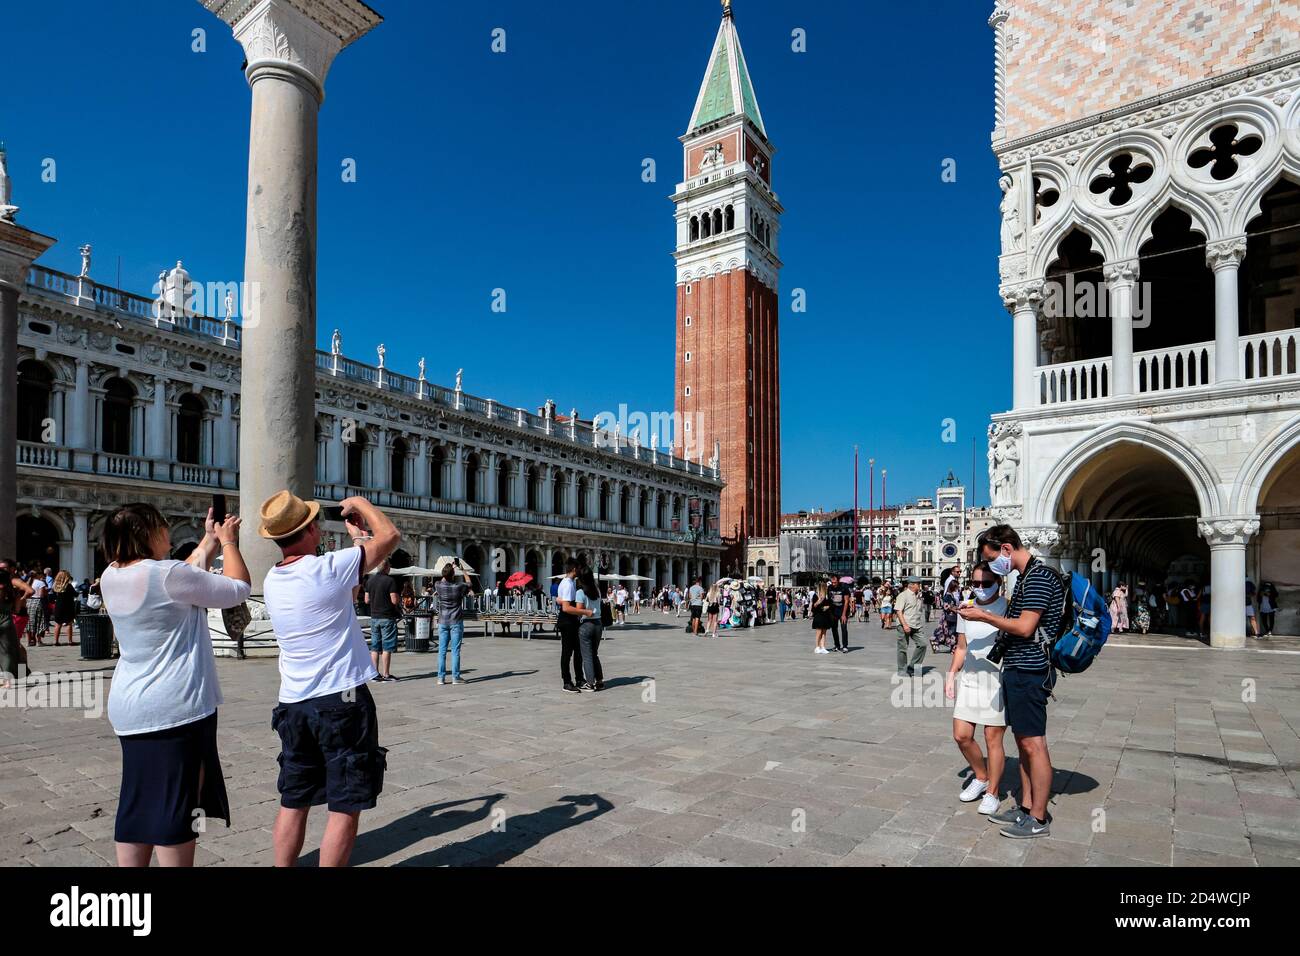 Nuovo turismo normale a Piazza San Marco (S. Piazza Marco), Venezia, Italia, durante la pandemia del coronavirus con turisti che indossano maschere facciali. Foto Stock